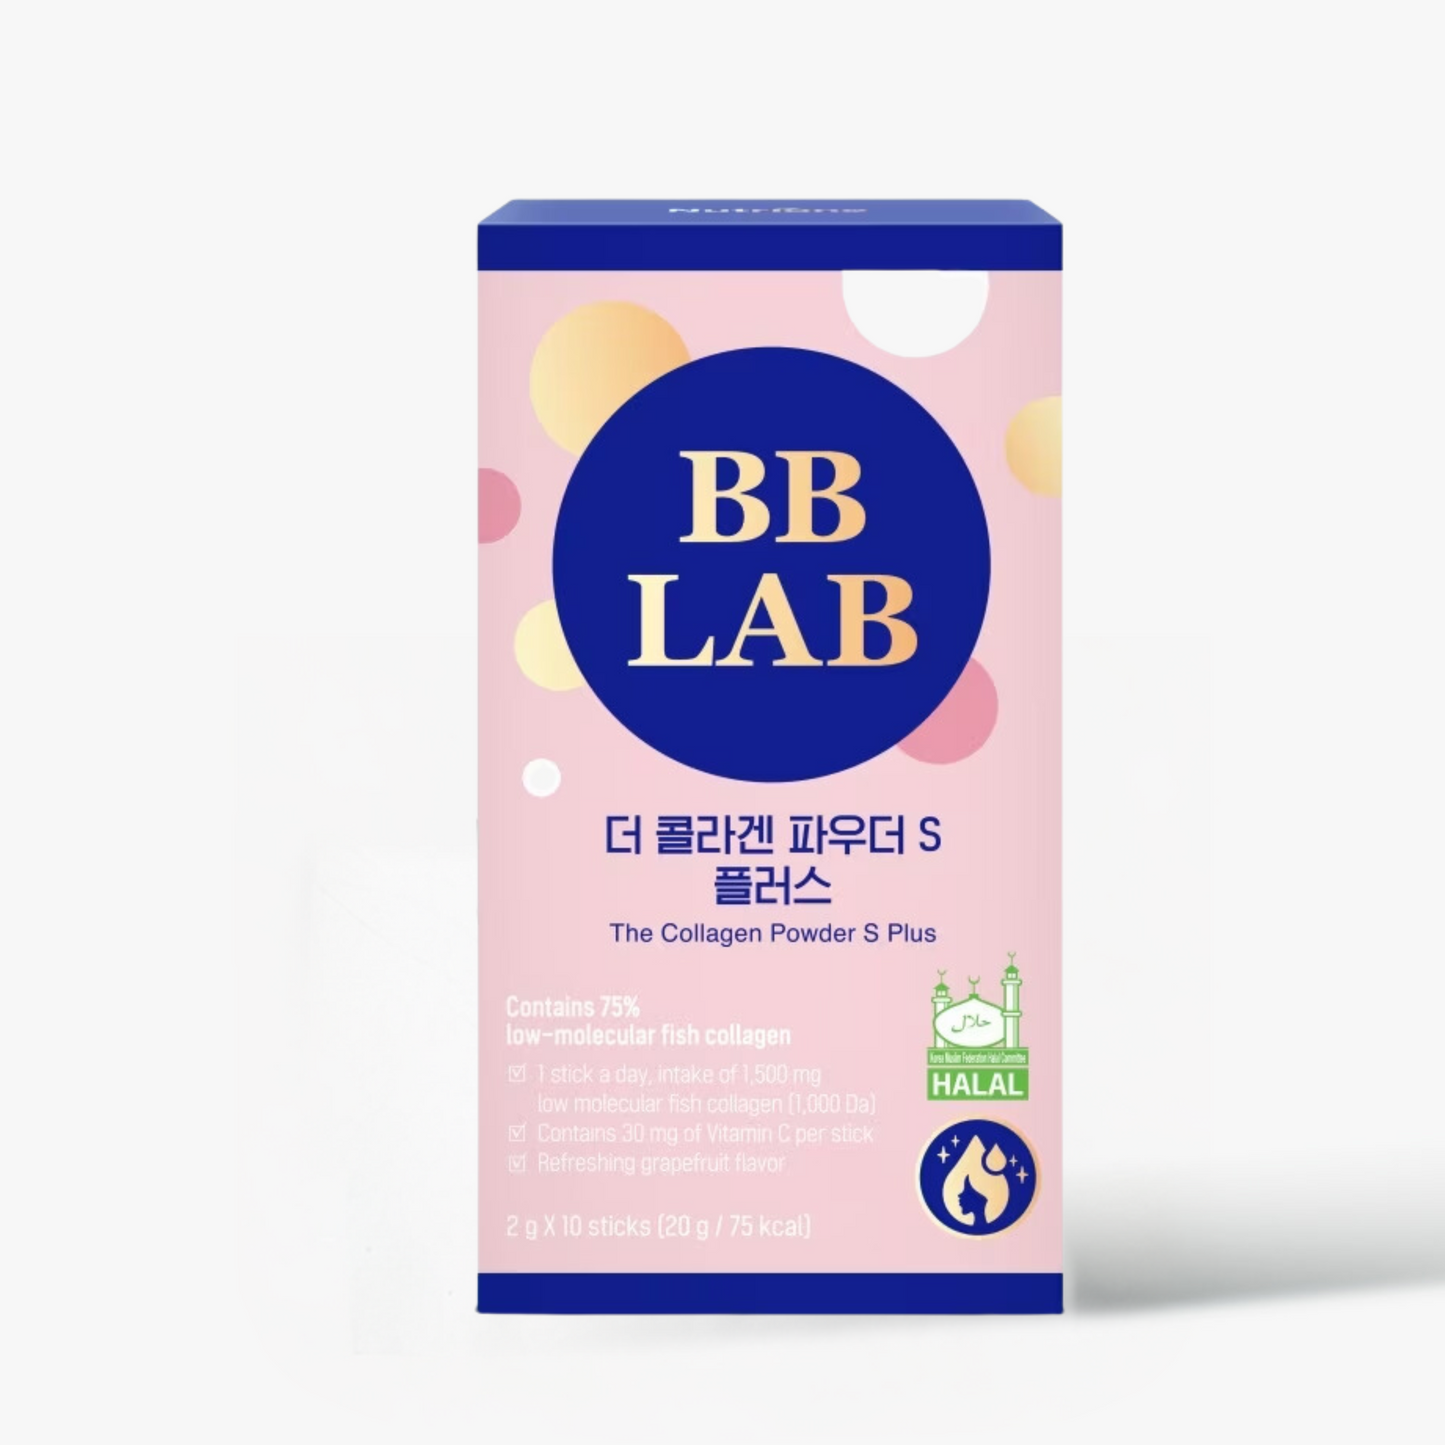 BB LAB The Collagen Powder S (Halal)